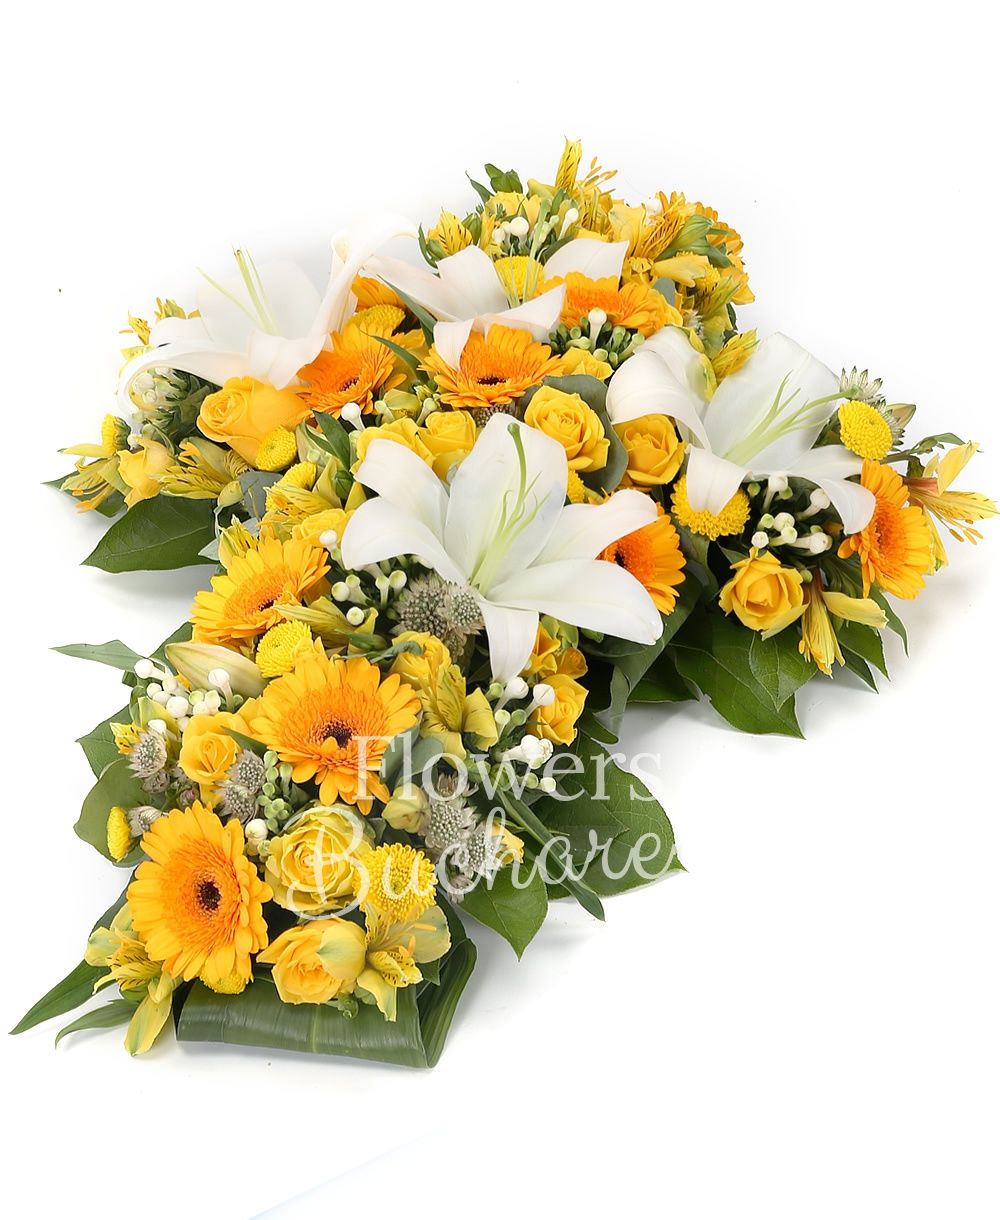 10 yellow roses, 2 white lilies, 10 yellow gerbera, 10 white bouvardia, 5 yellow miniroses, 5 yellow santini, 3 yellow alstroemeria, white asparagus, greenery